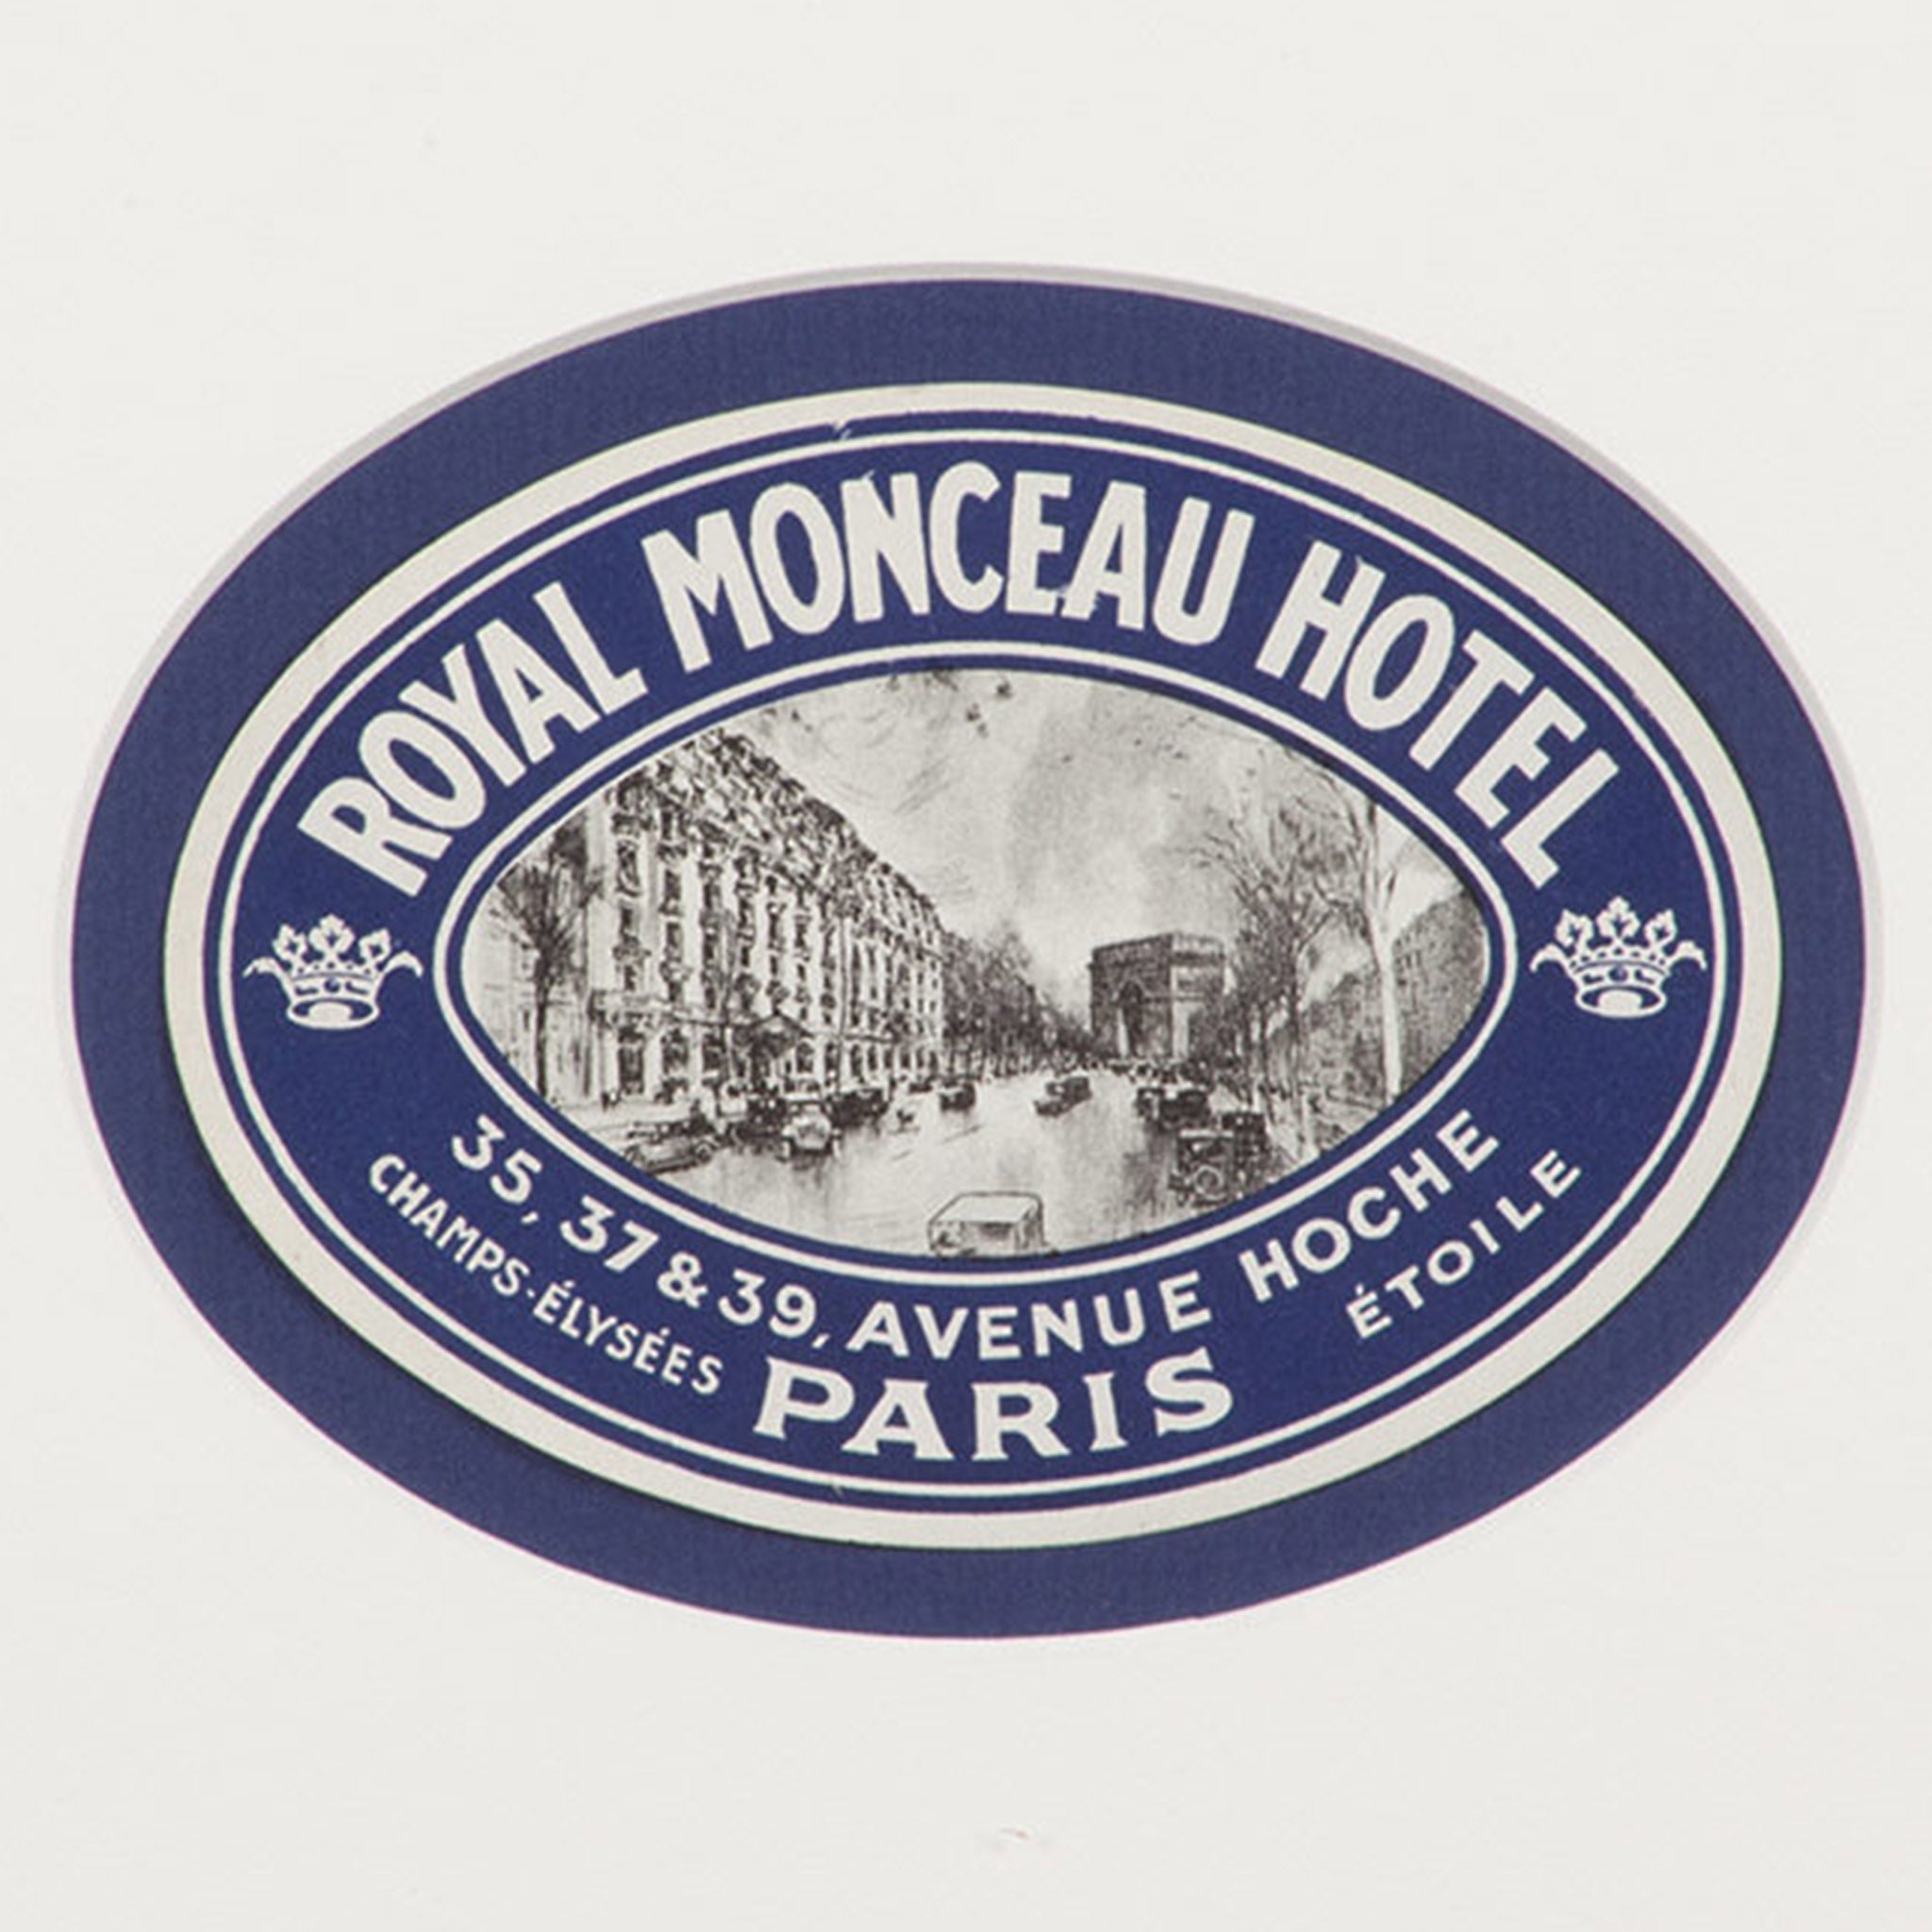 Royal Monceau Hotel Paris Luggage Label